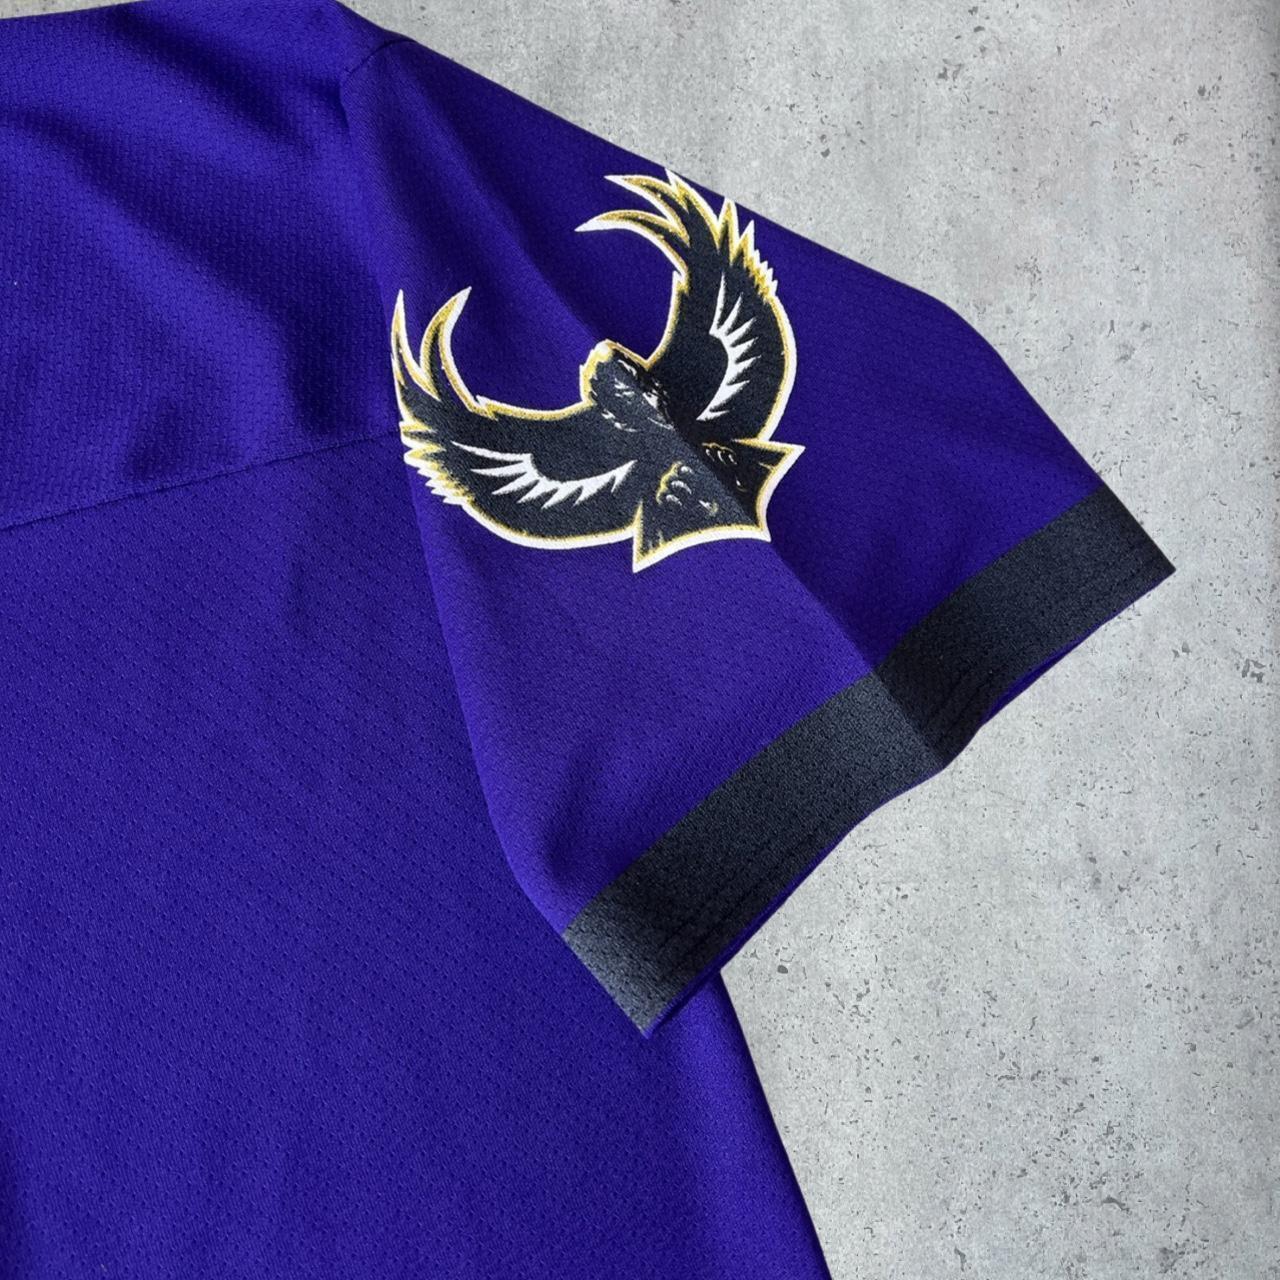 Toronto Blue Jays Vintage 90s Ravens Sweatshirt - Depop